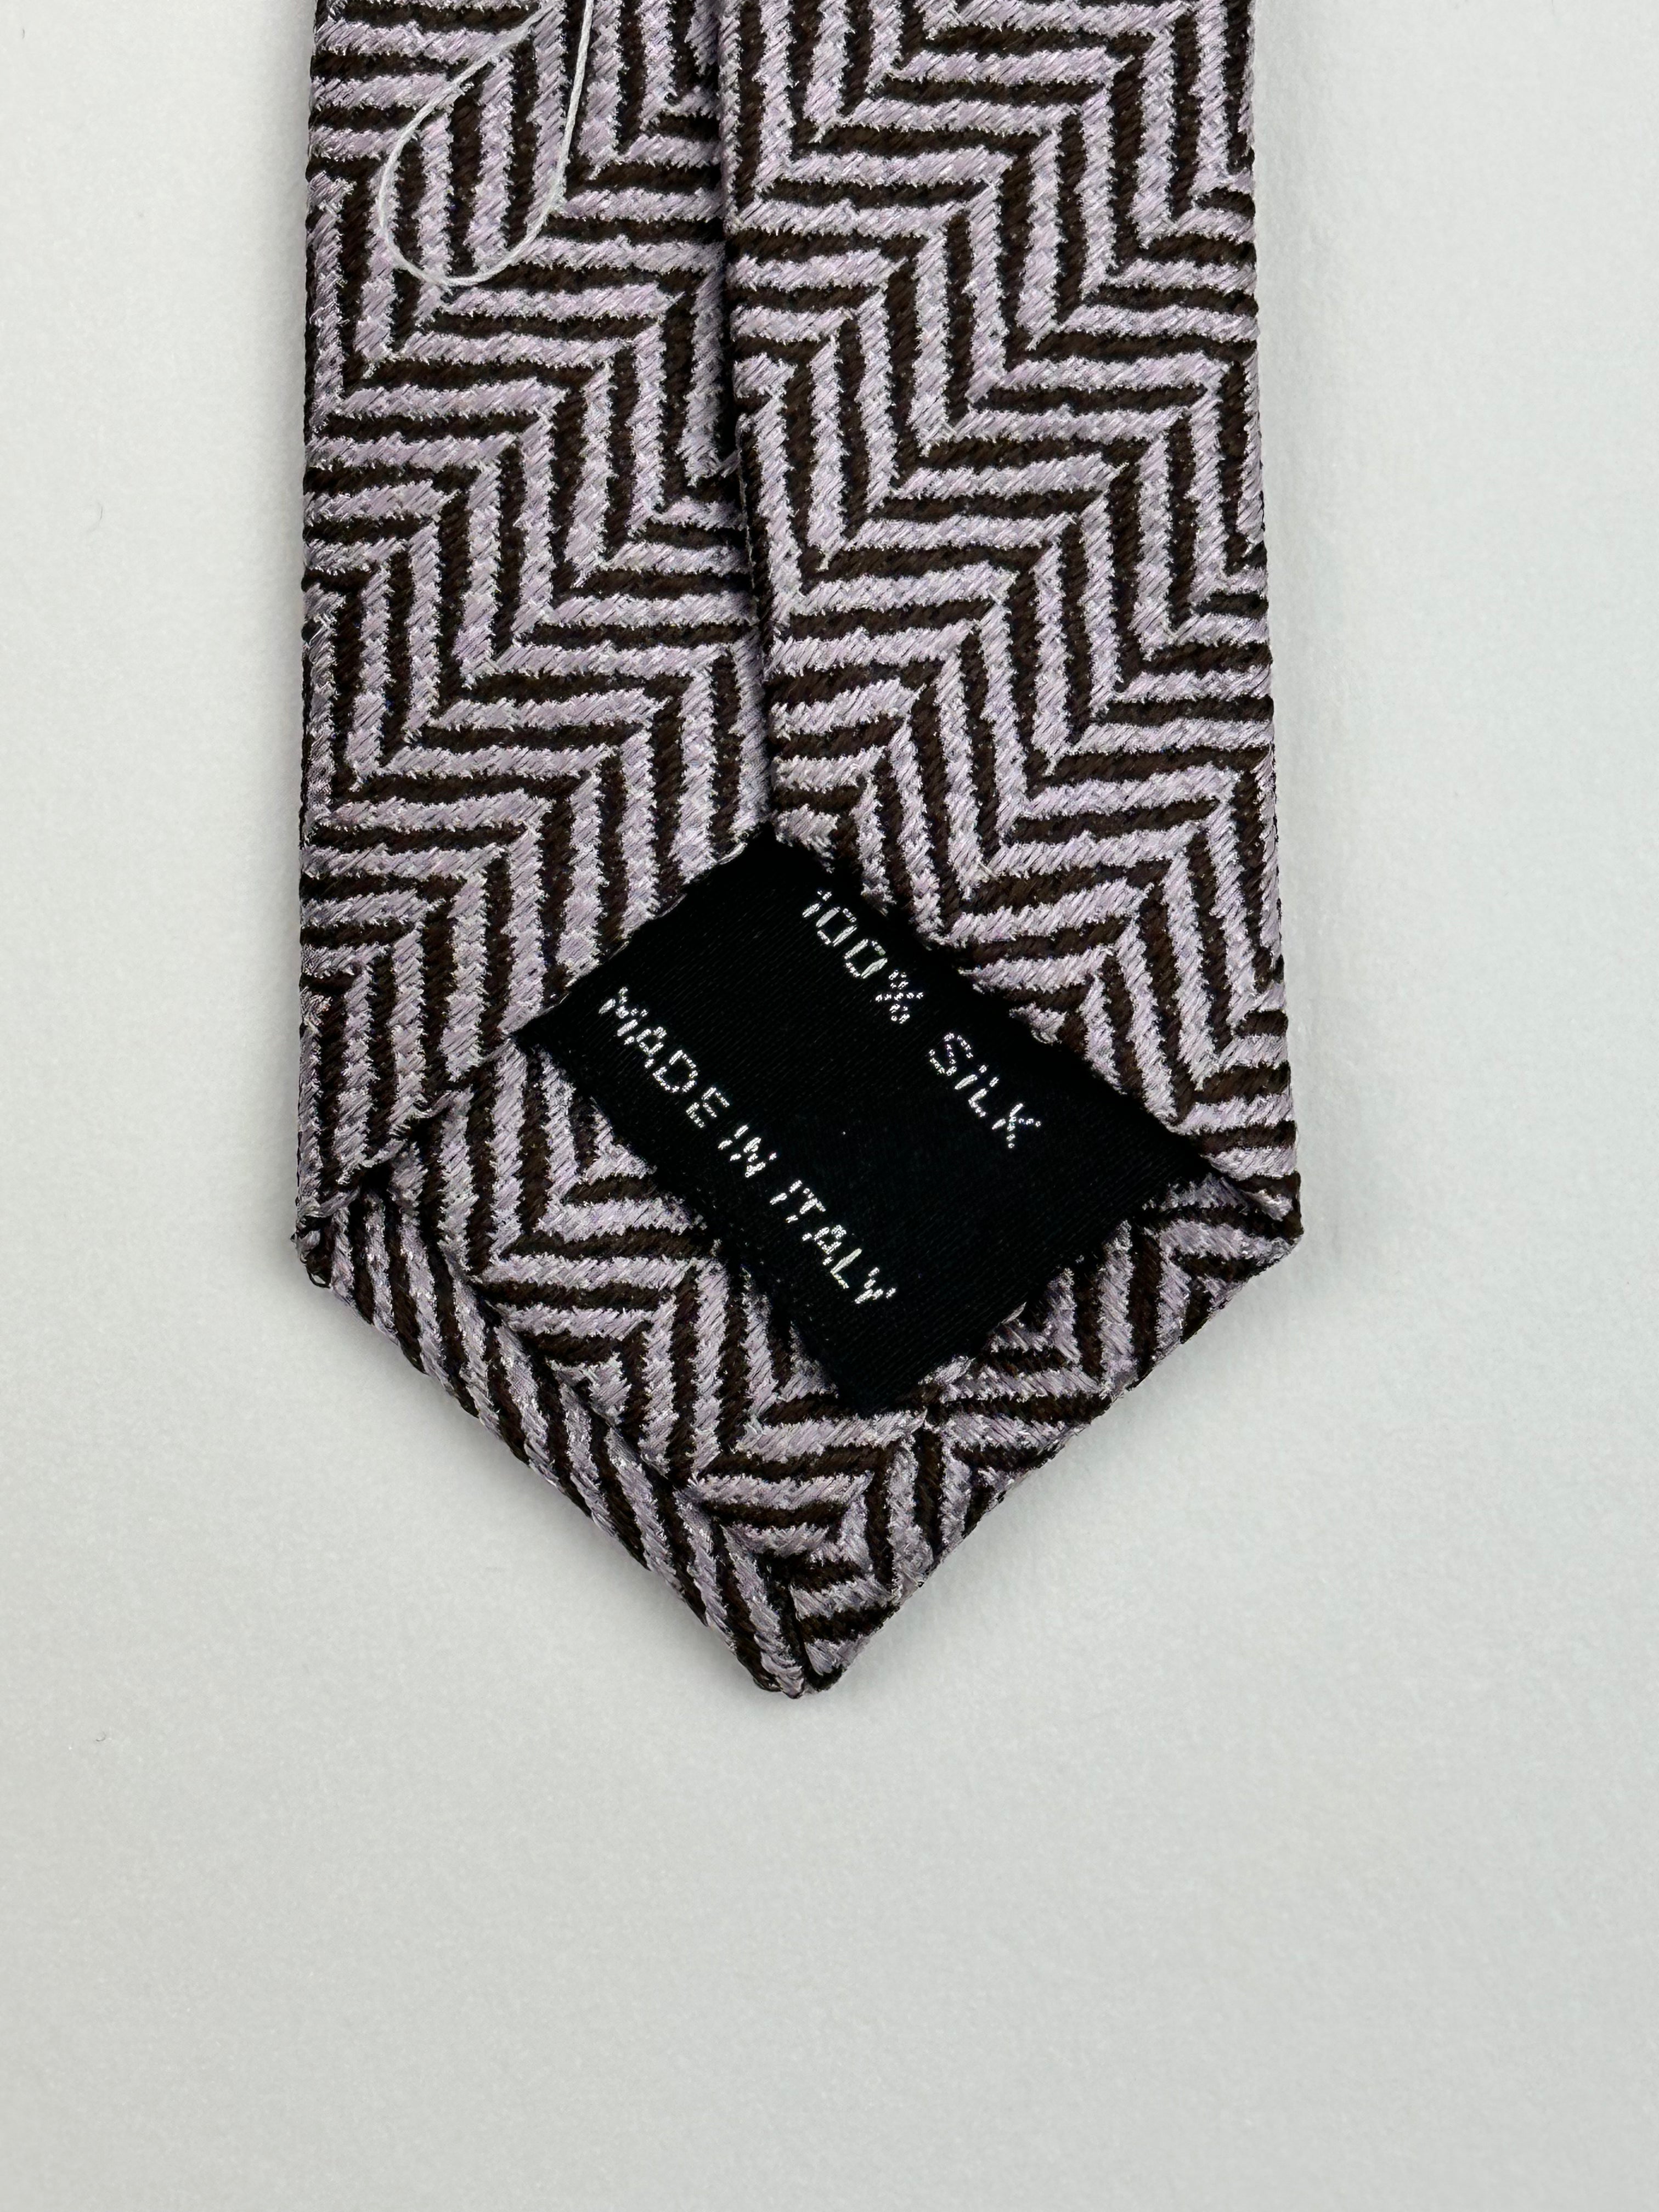 Tom Ford zijden stropdas